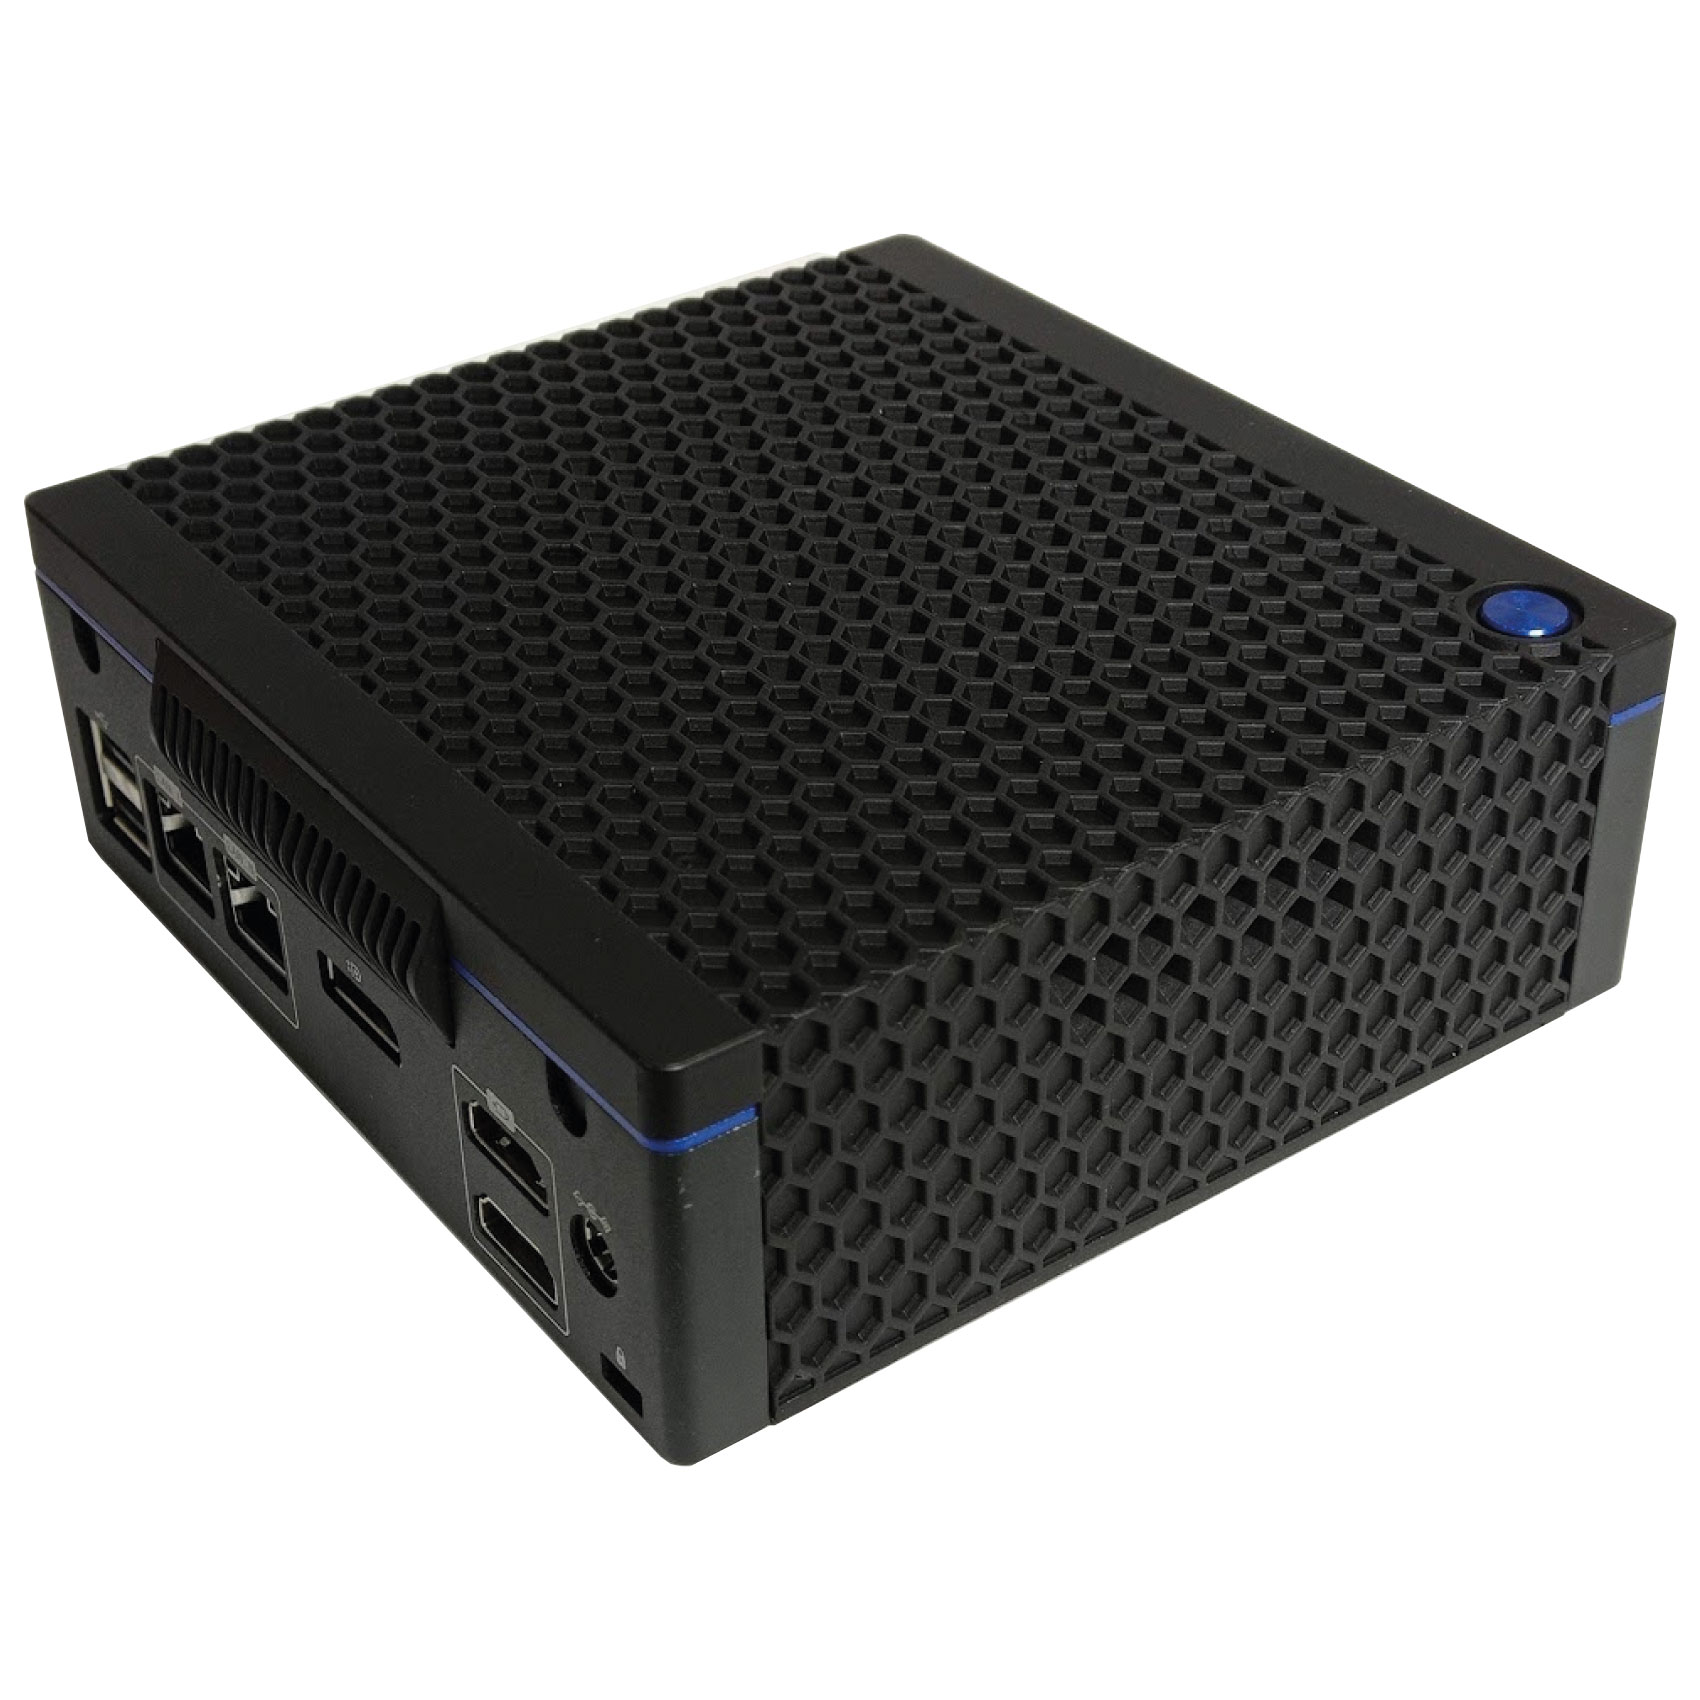 BOX-NUC510 Mini PC i5 8GB, SSD 512GB, No Wifi, Win 10Pro, 2LAN, 6USB, 1TypeC, 2HDMI, 1DP